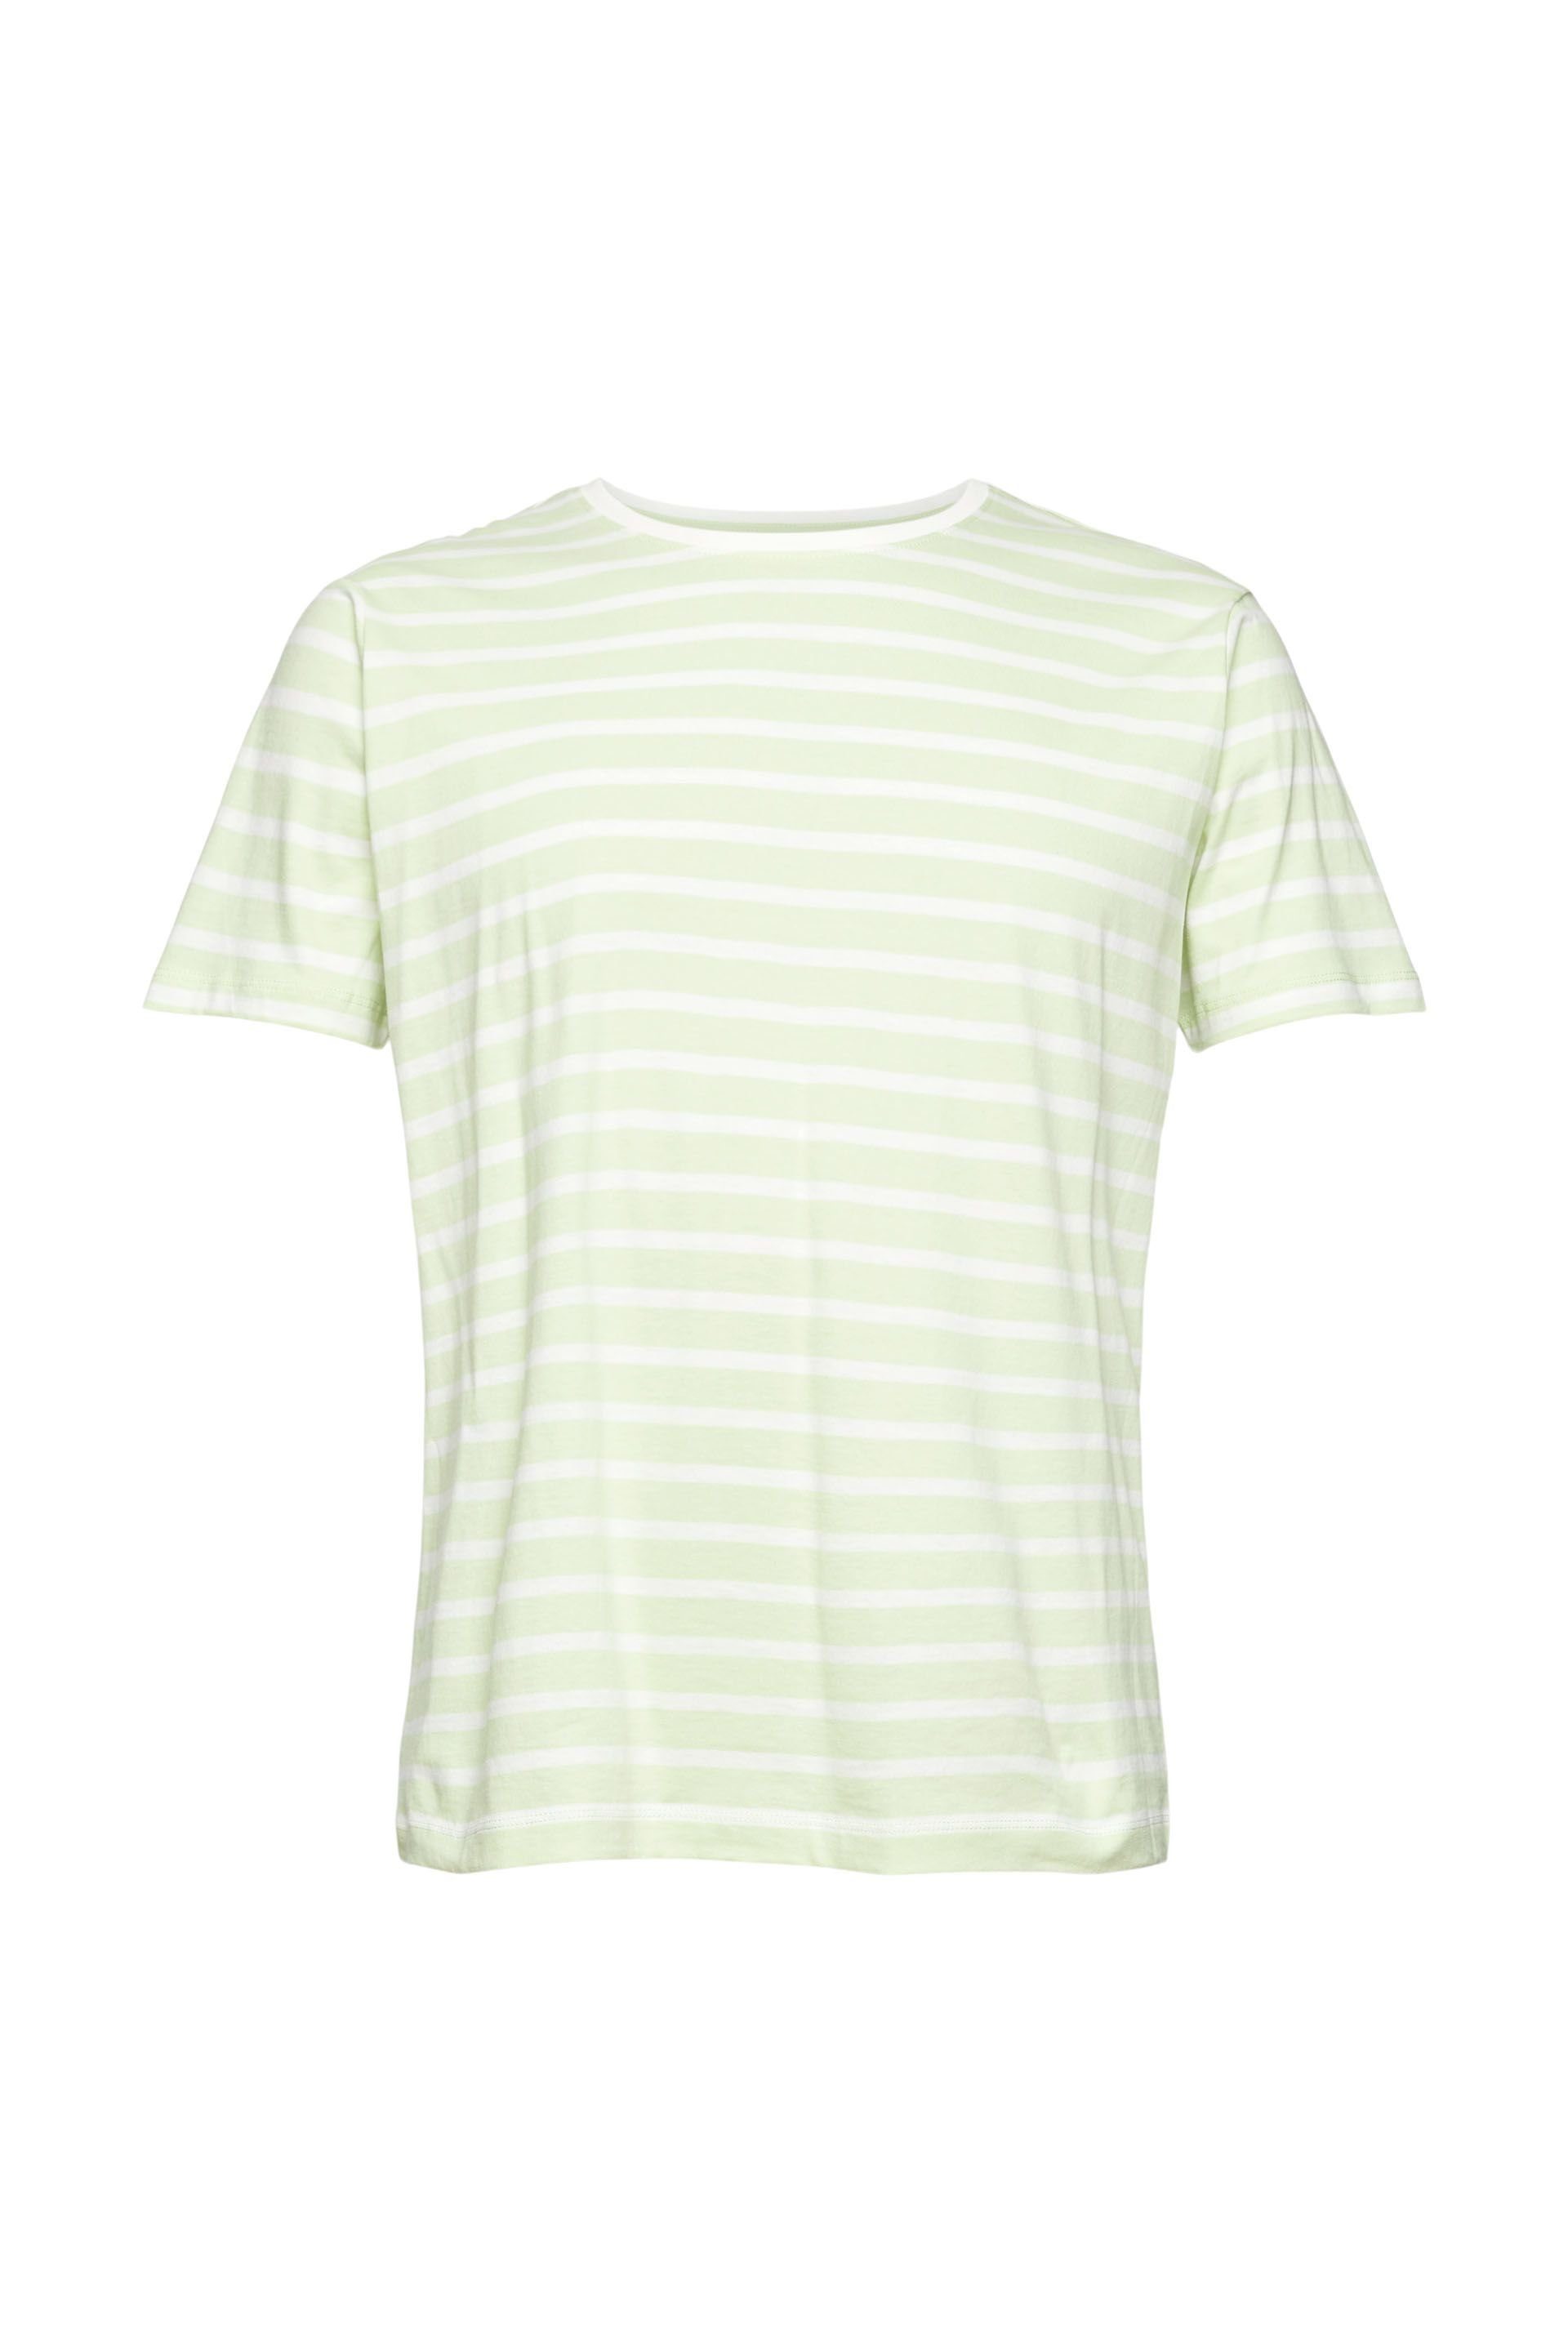 Esprit T-Shirt light green